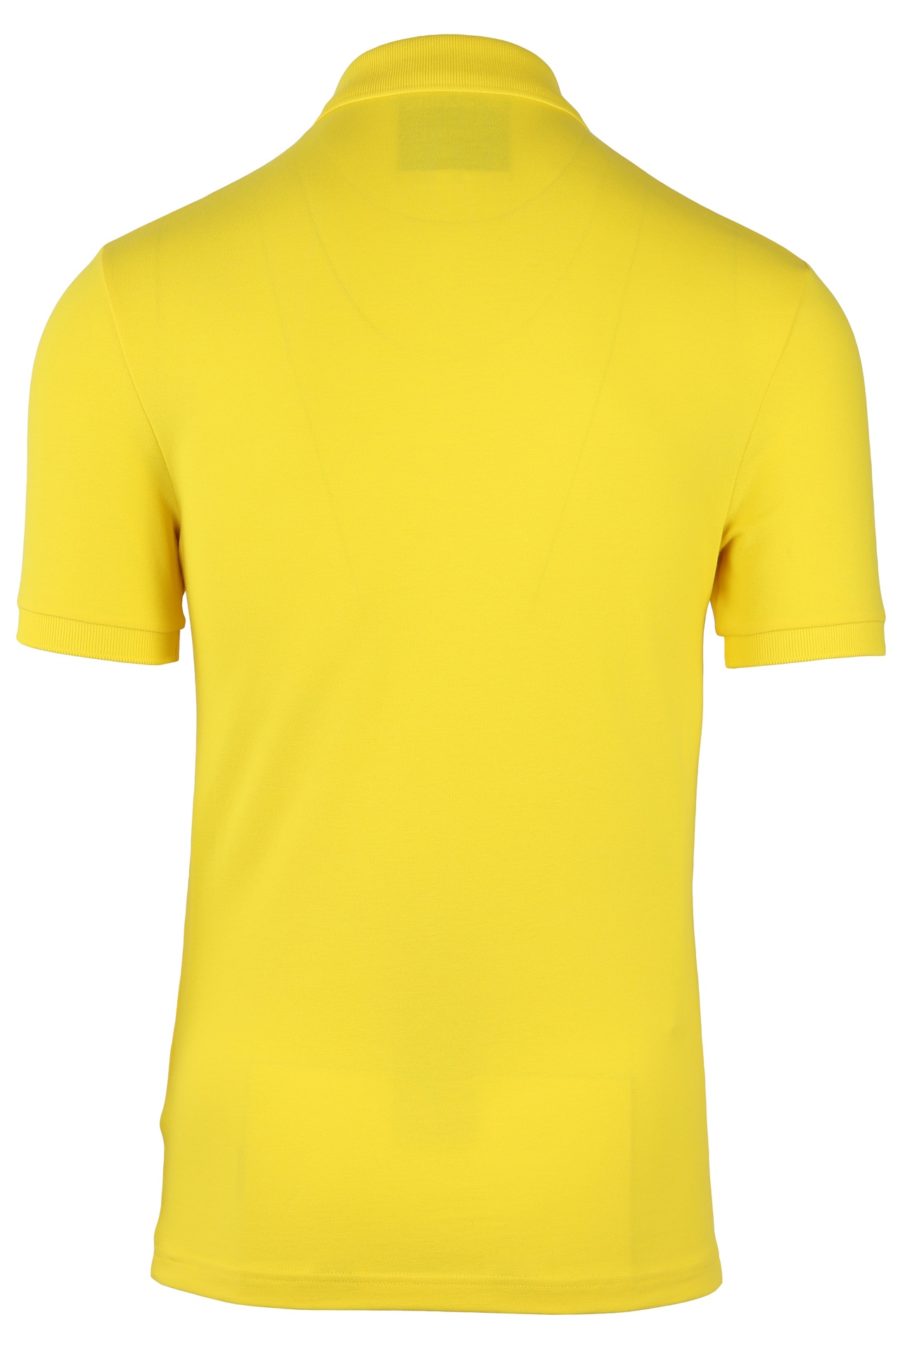 Polo Moschino Couture de color amarillo - ff63e162c10cf87b013be8dc0f5263ad17e0a384